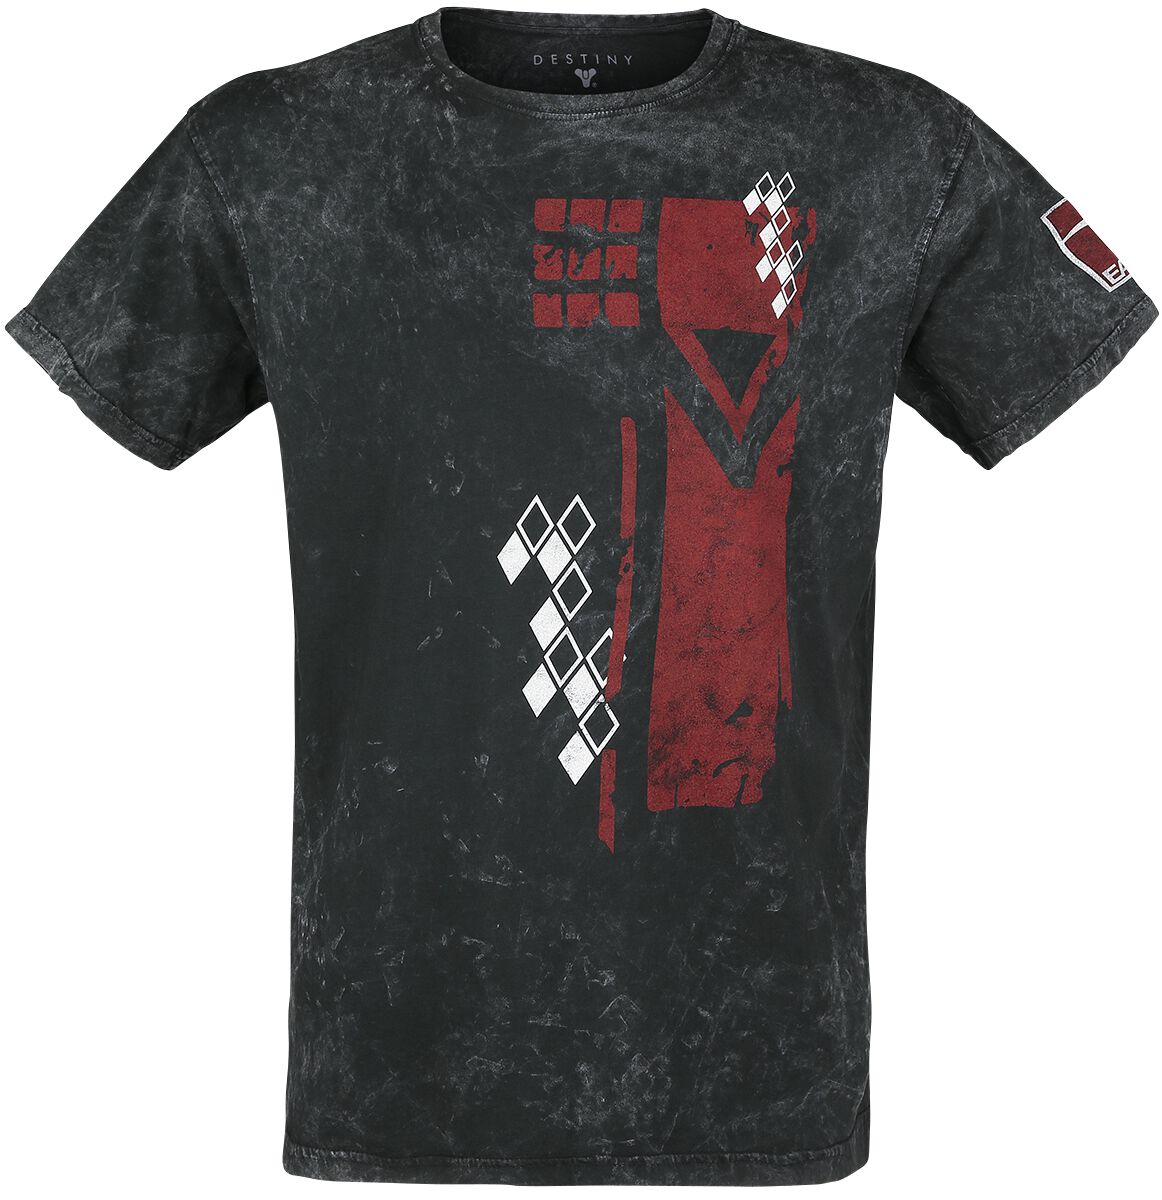 Destiny - Gaming T-Shirt - 2 - Cayde-6 - S bis 3XL - für Männer - Größe L - schwarz  - EMP exklusives Merchandise! von Destiny